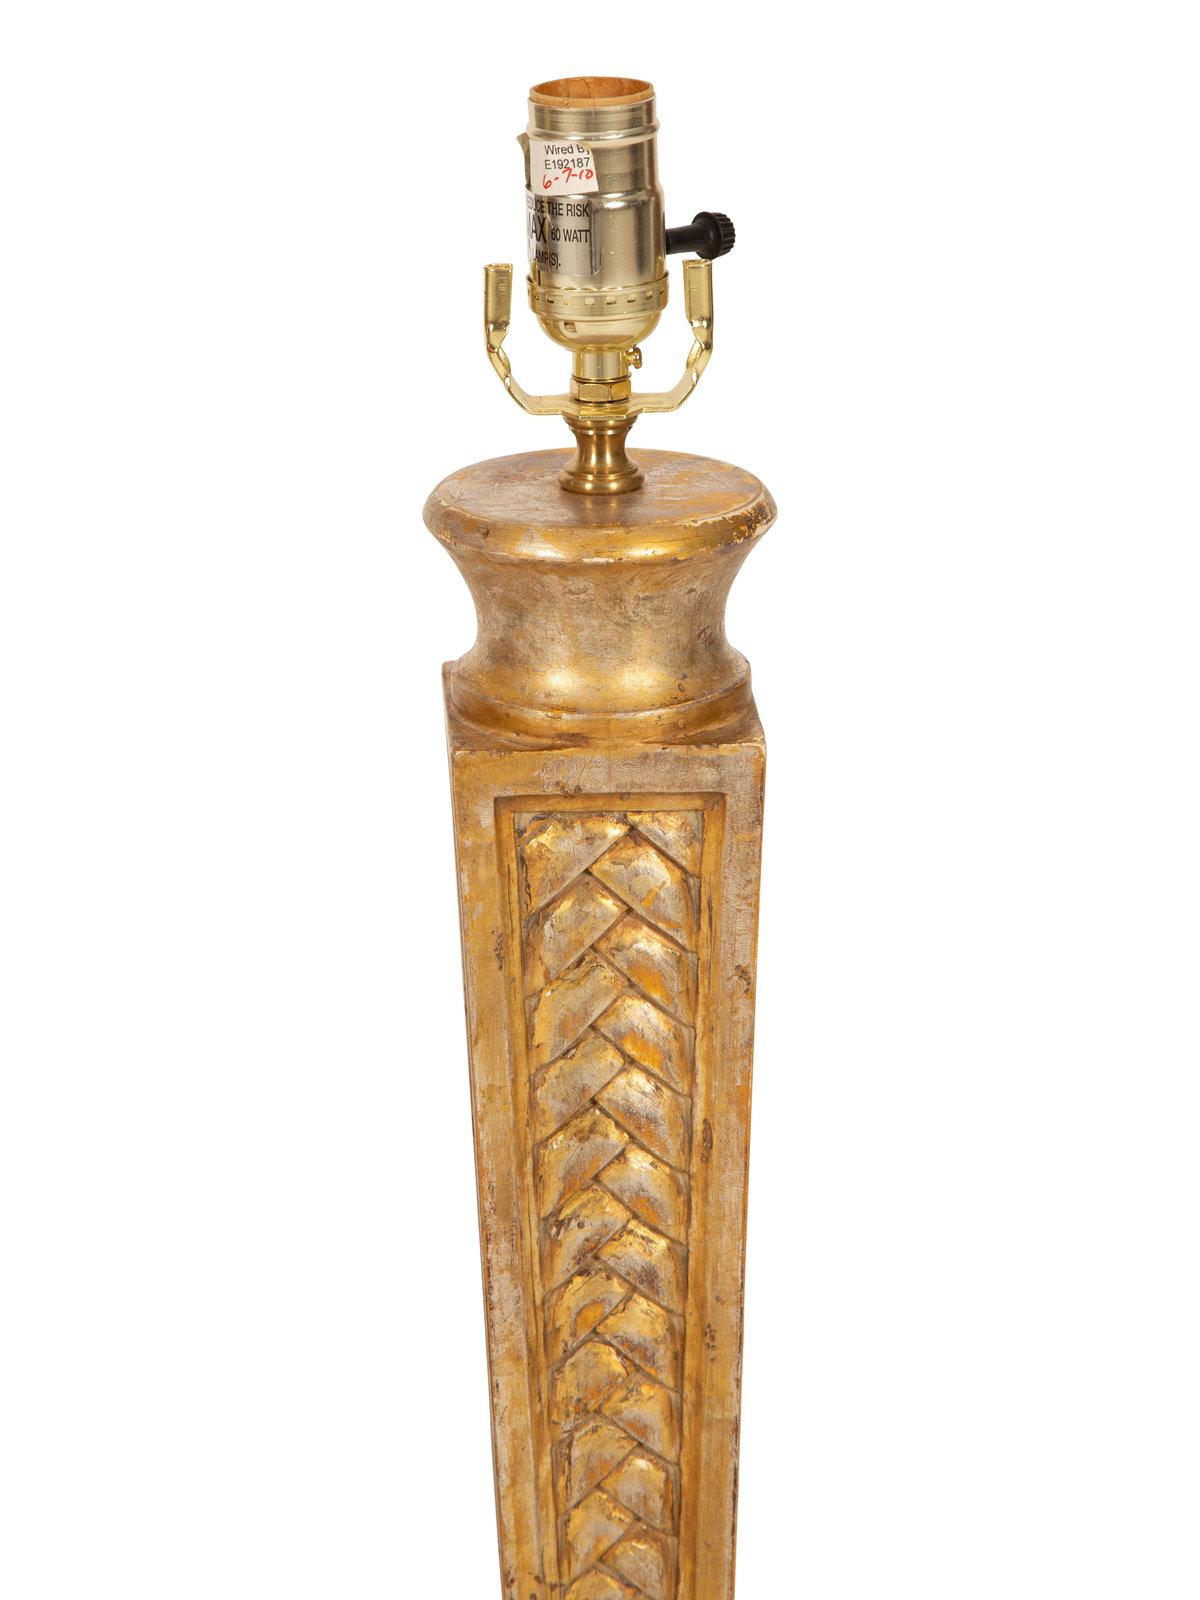 Très belle paire de lampes de table en bois sculpté et doré
France, vers 1930
Hauteur totale 29 1/2 pouces. Hauteur de la lampe 18 3/4